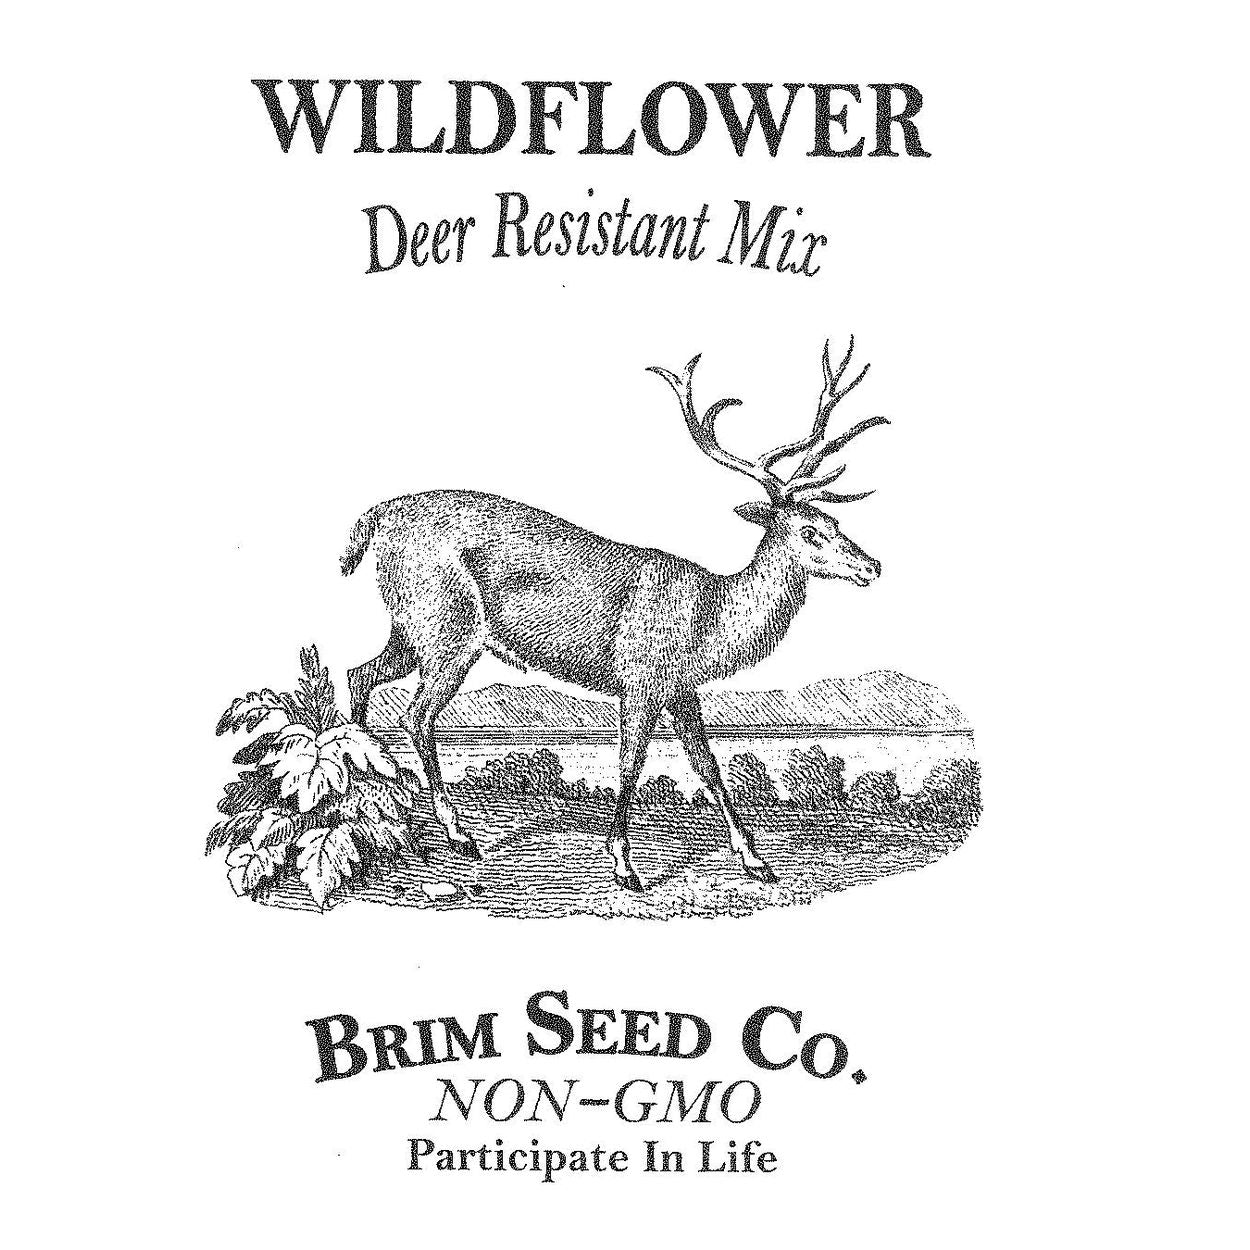 Brim Seed Co. - Deer Resistant Mix Wildflower Seed